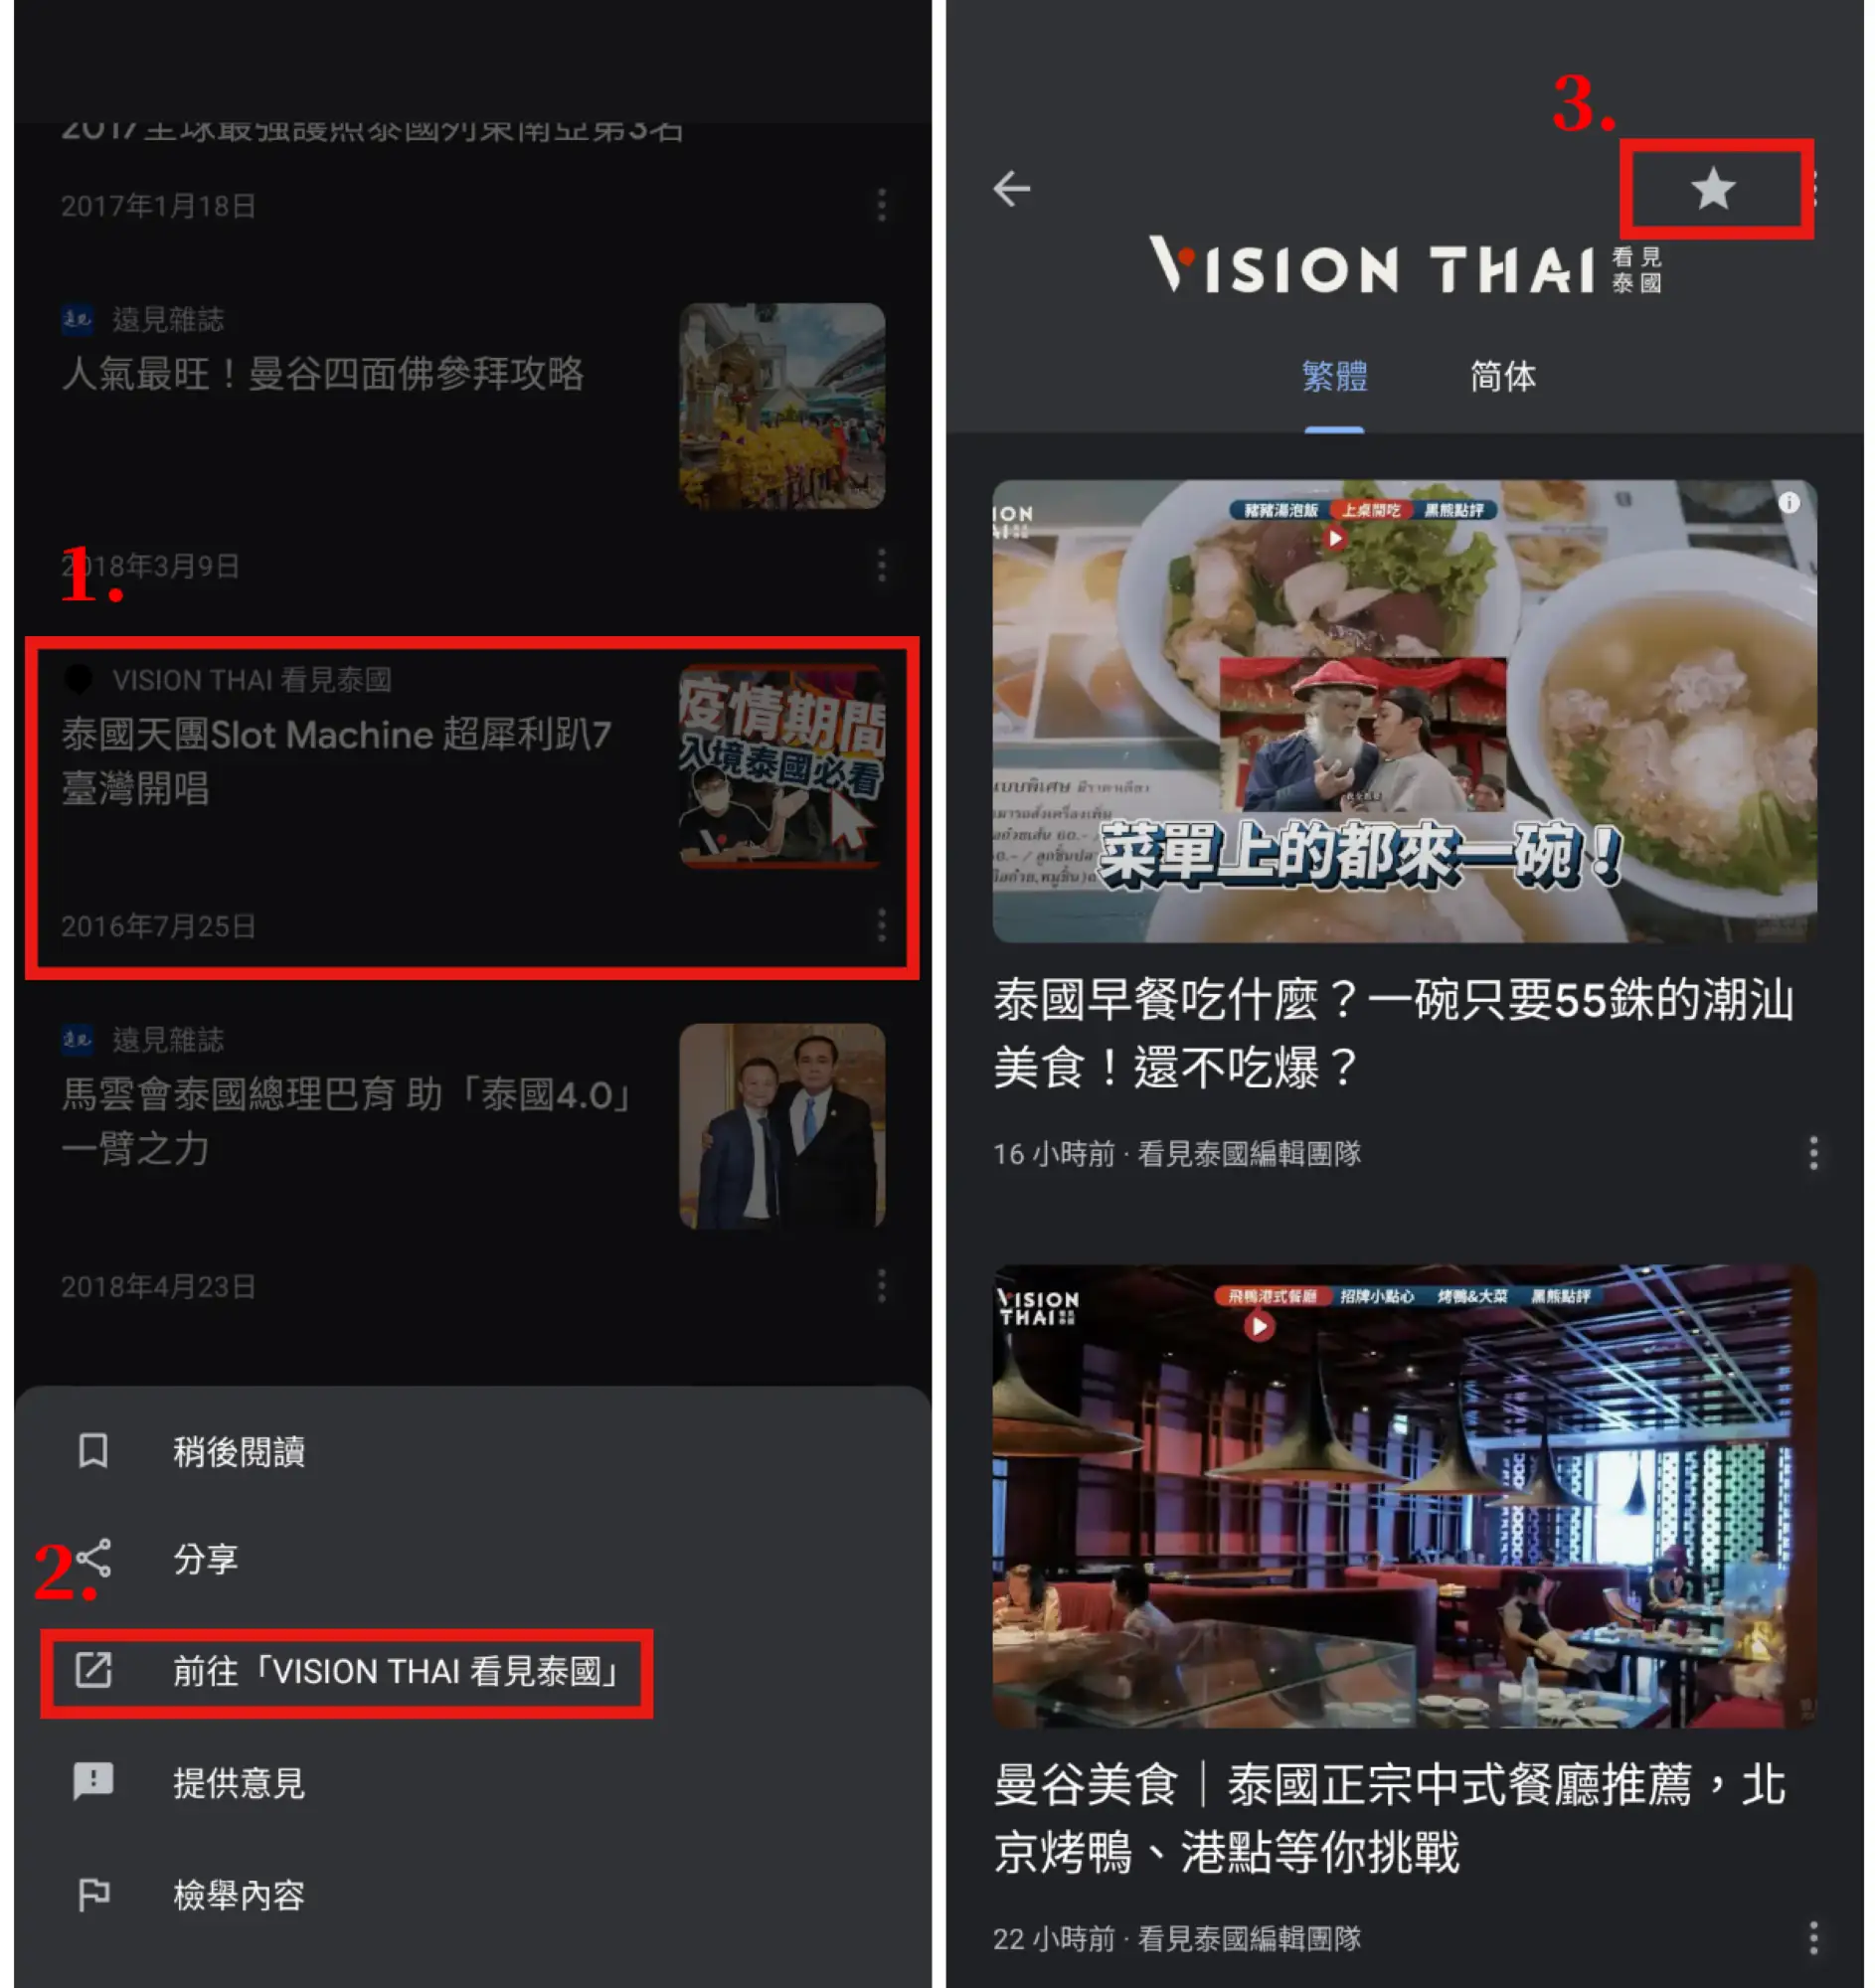  （圖3）在手機版的Google新聞首頁輸入搜尋"VISION THAI看見泰國"，並找到有註明"VISION THAI看見泰國"的新聞，點選更多"前往VISION THAI看見泰國"，接著點選"追蹤鍵"，就大功告成了！